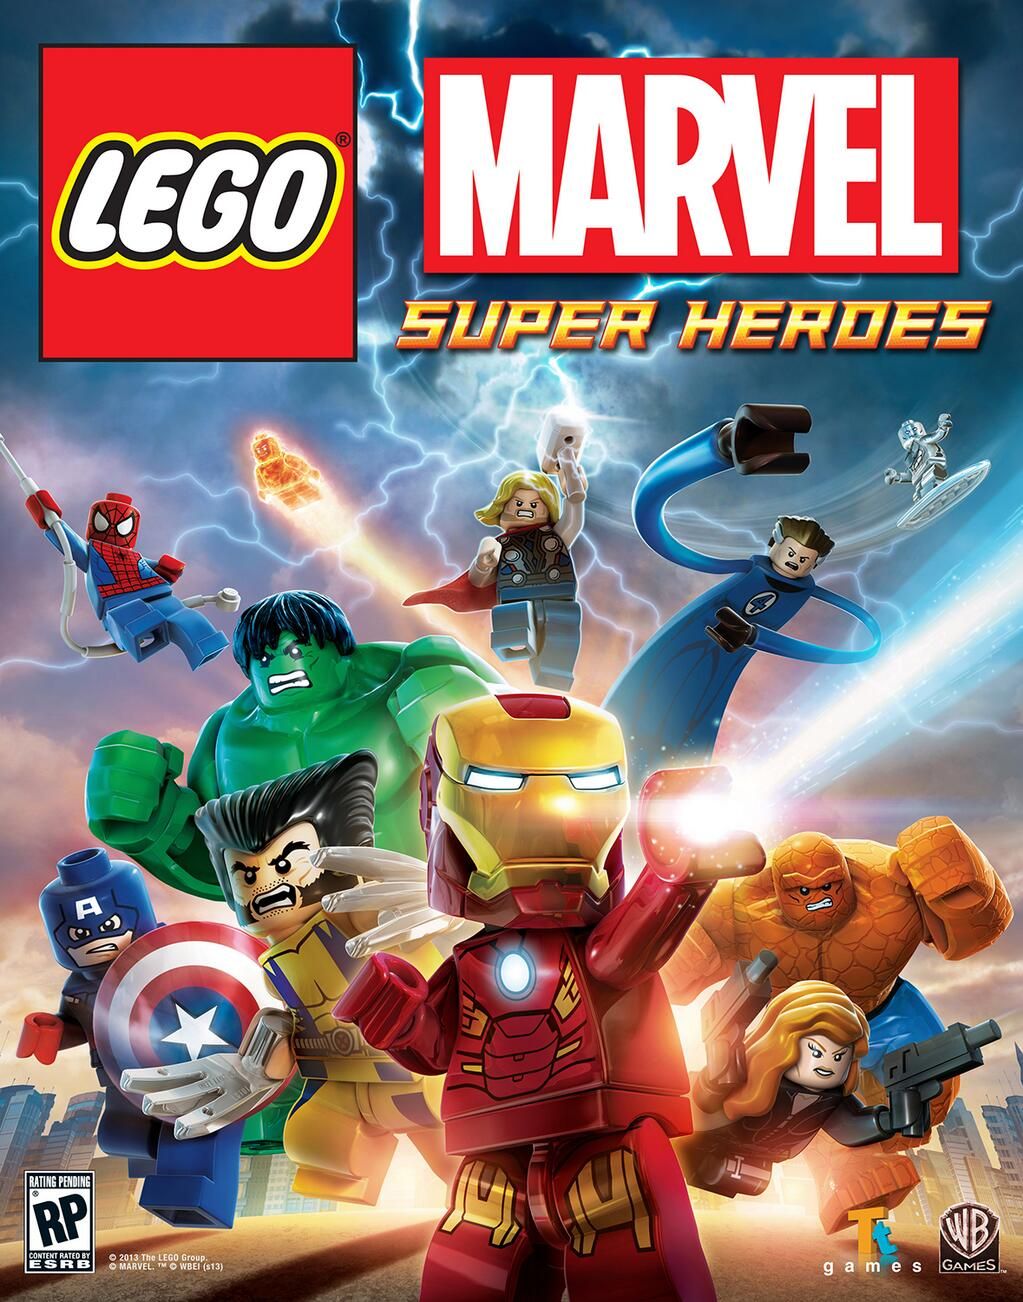 lego marvel superheroes team up